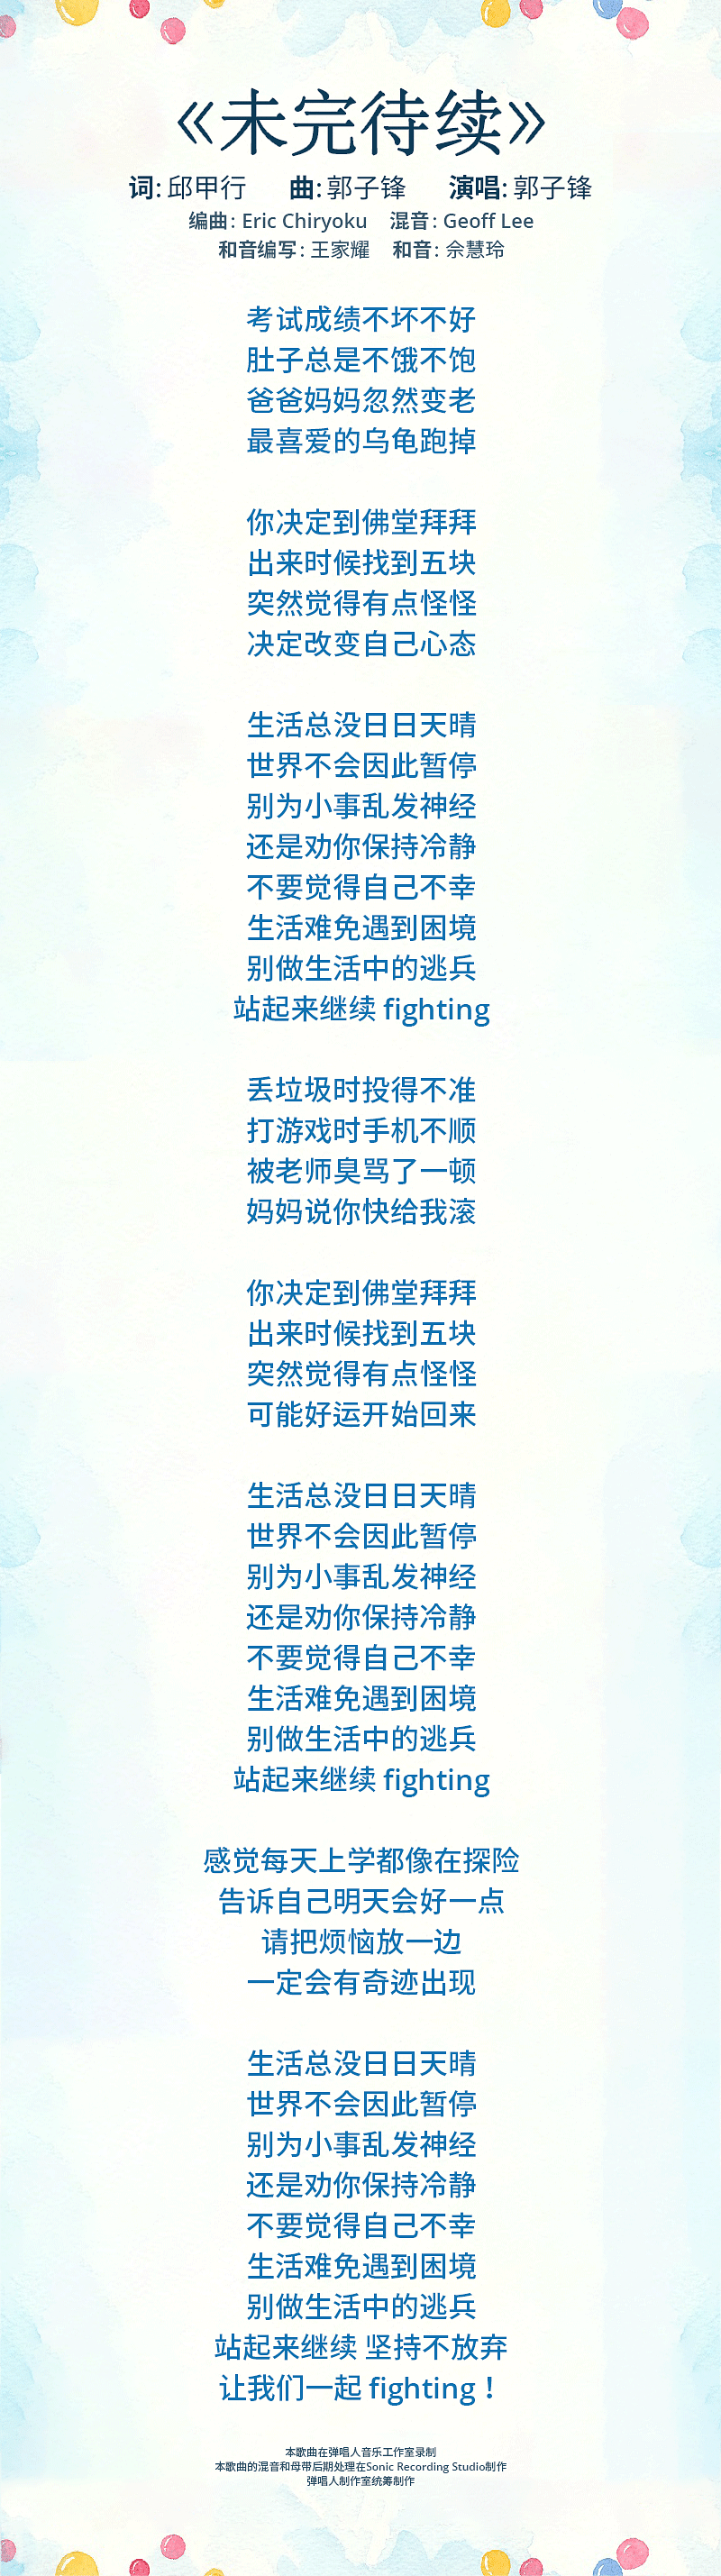 wei-wan-dai-xu-lyrics-mobile.png